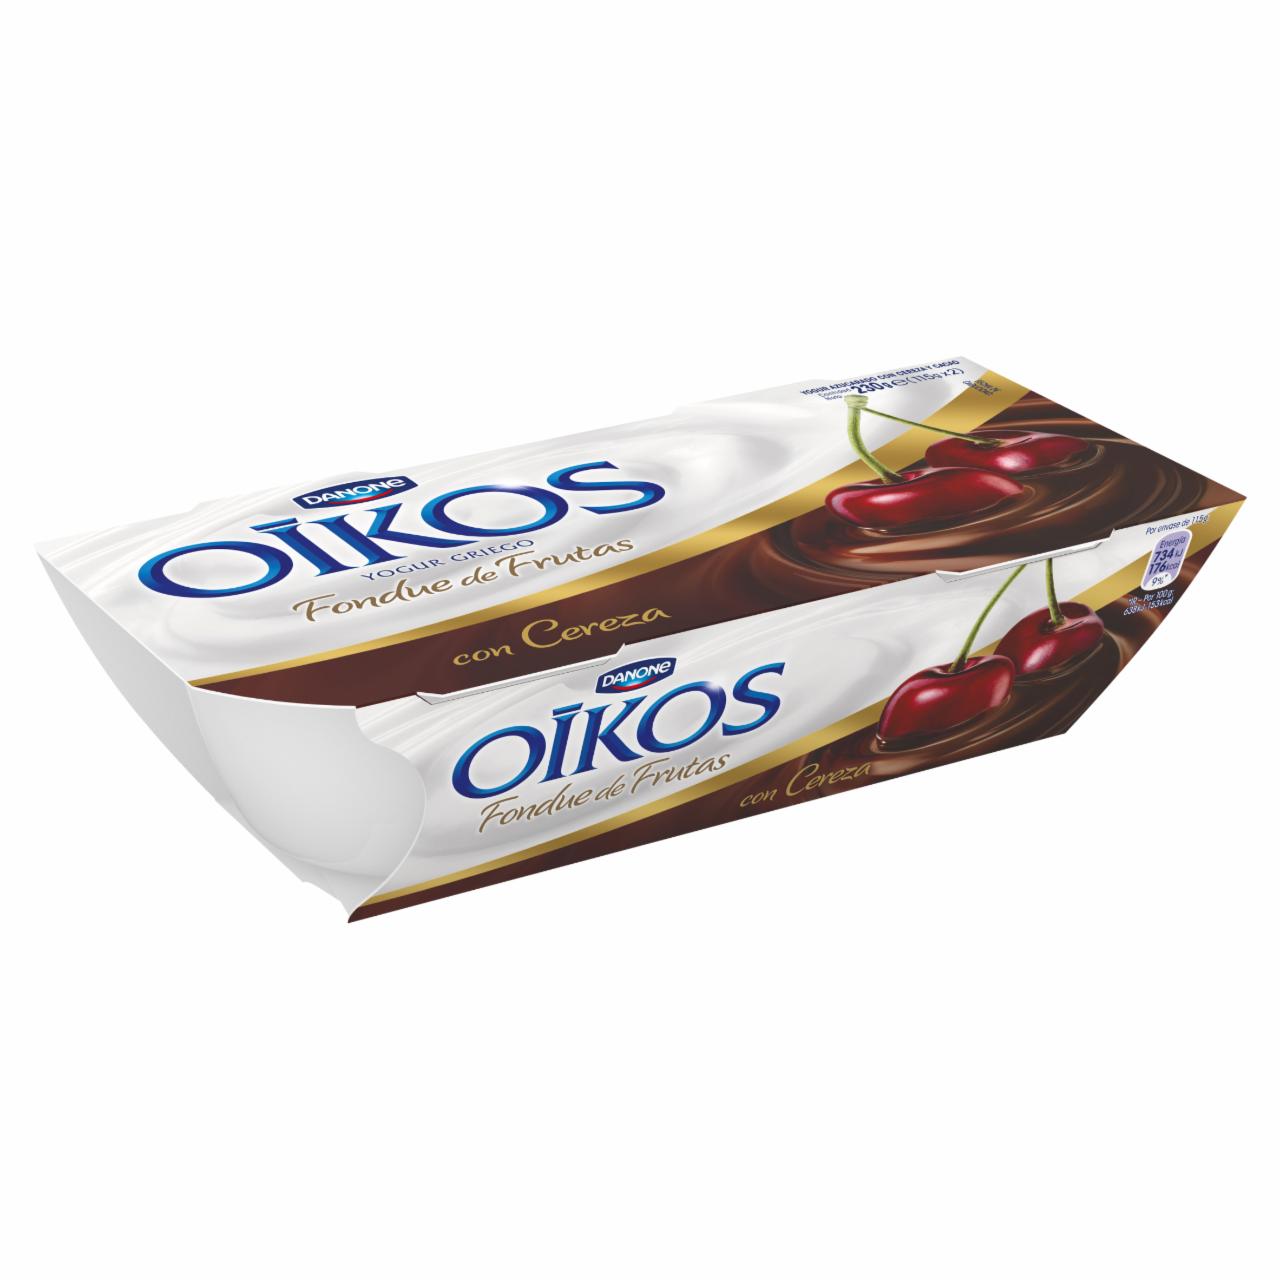 Képek - Danone Oikos Extreme élőflórás görög krémjoghurt kakaó-cseresznye öntettel 2 x 115 g